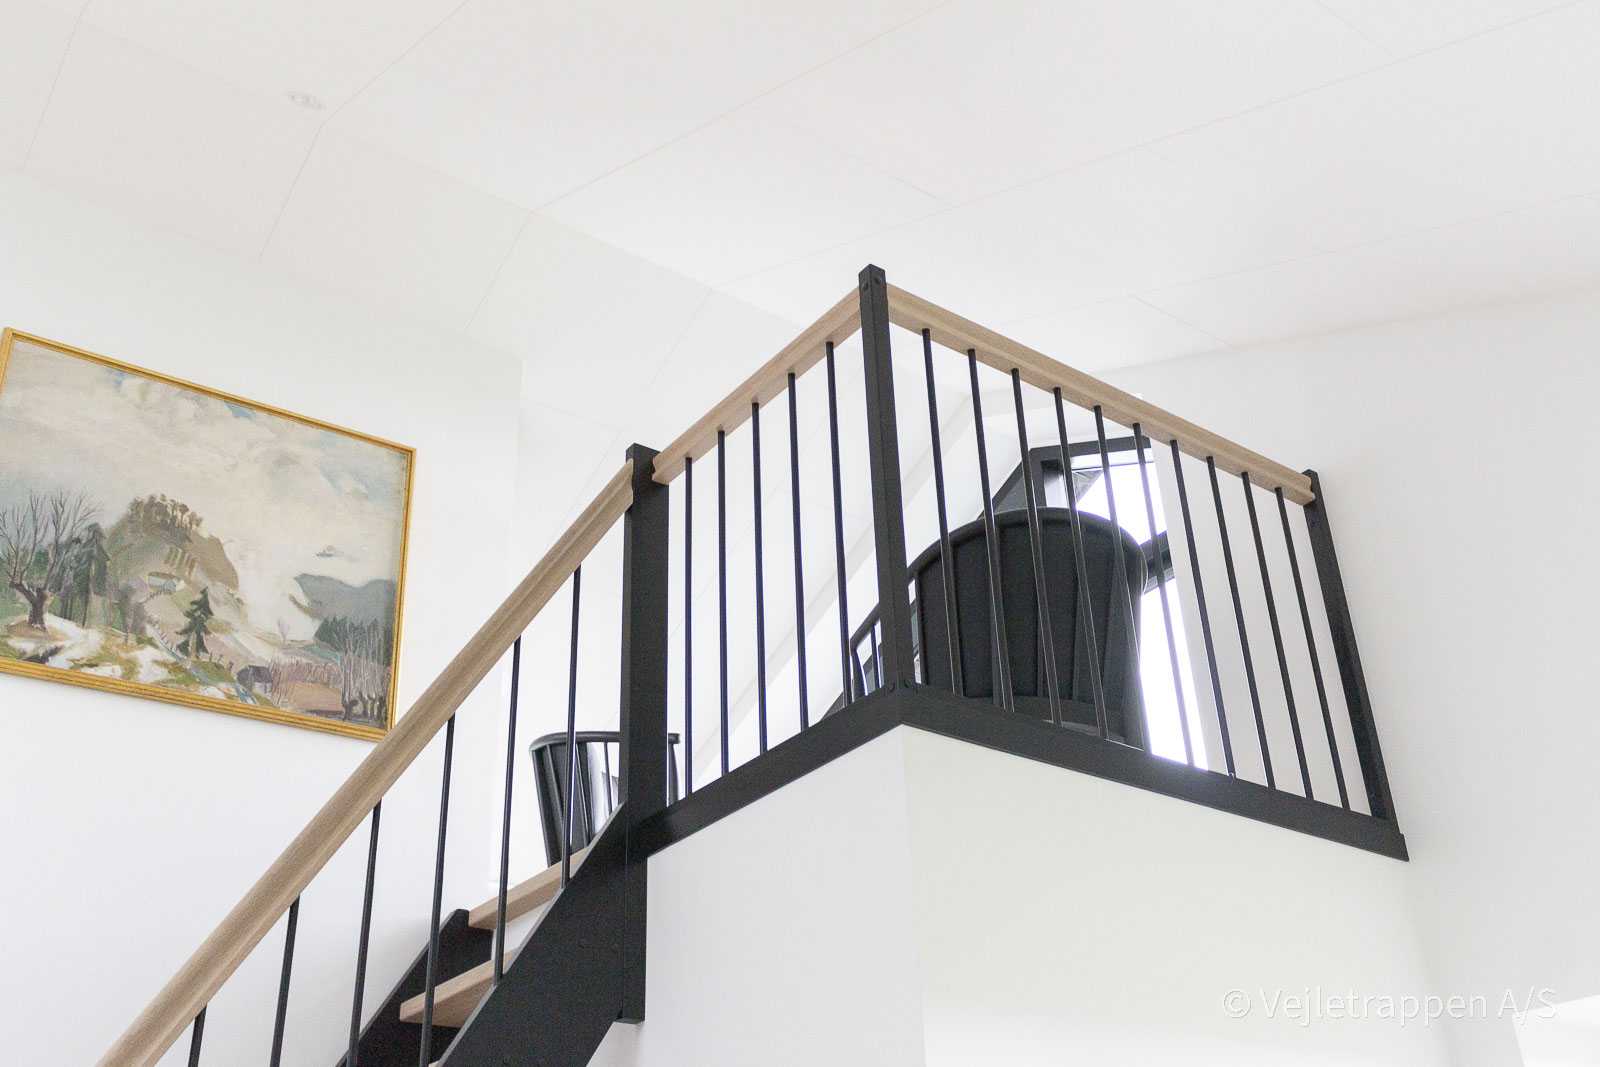 Halvsvingstrappe med repos. Trætrappe med trappetrin og gelænder i eg og sorte balustre fra Vejletrappen